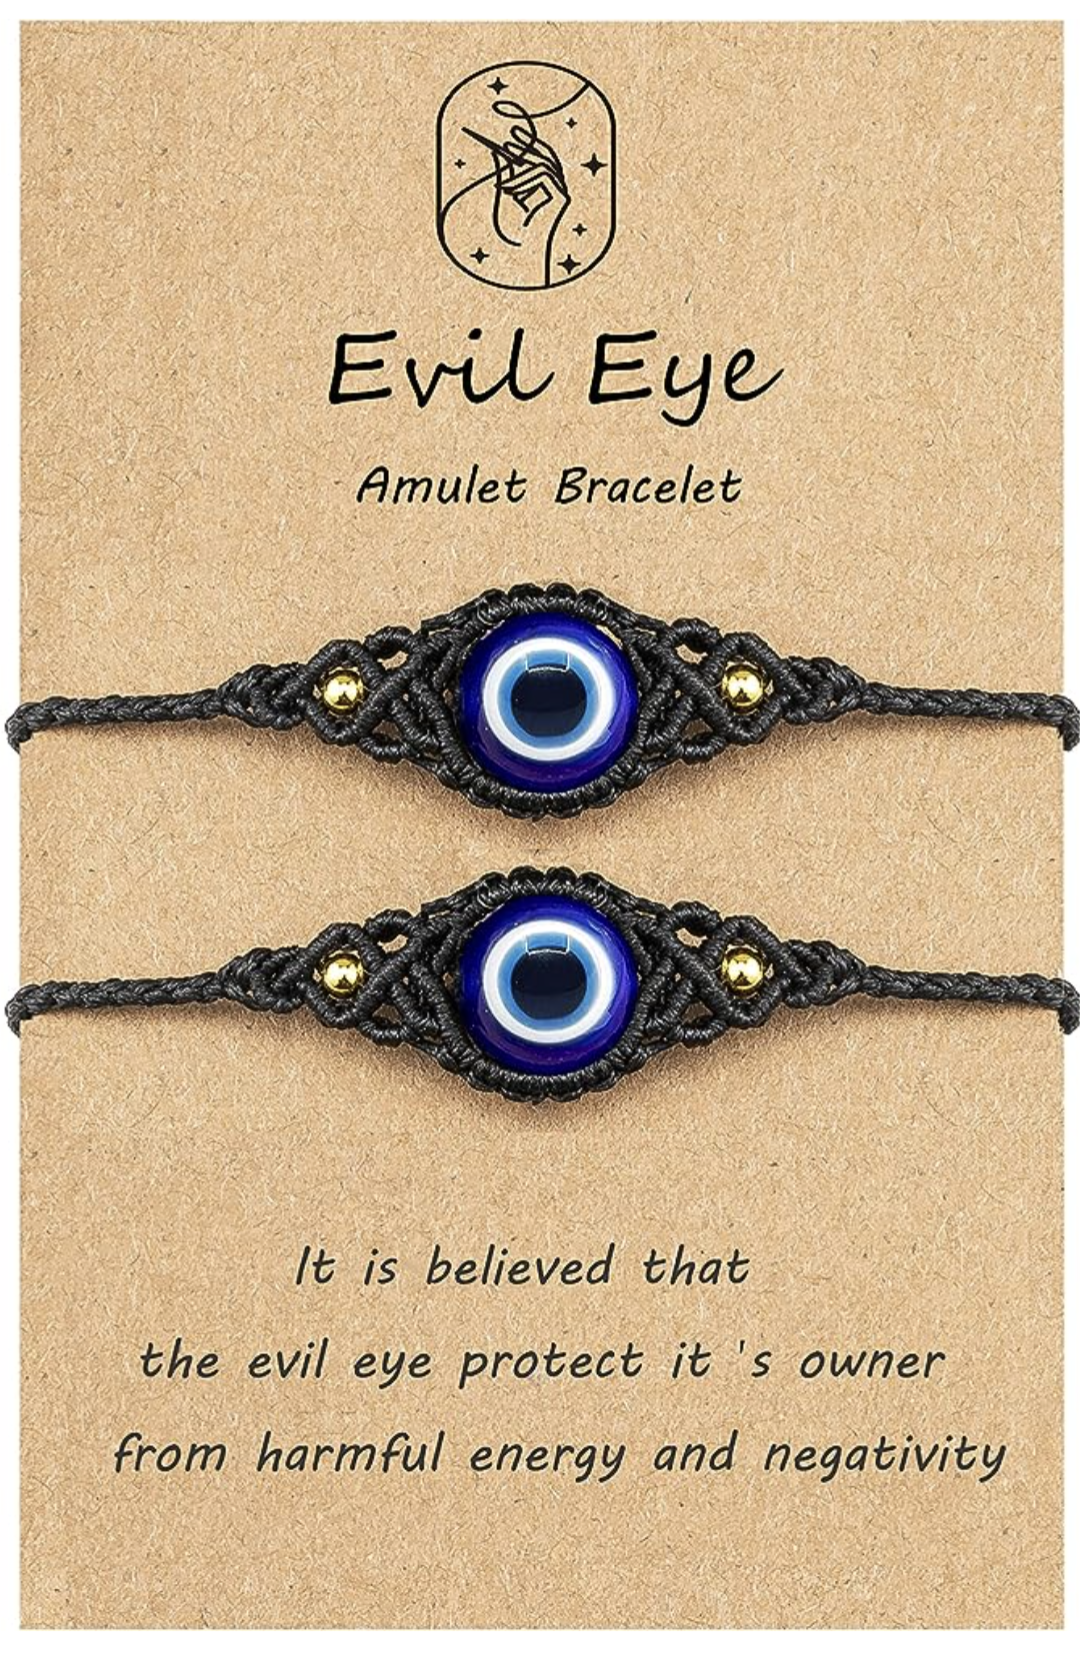 Evil eye jewelry